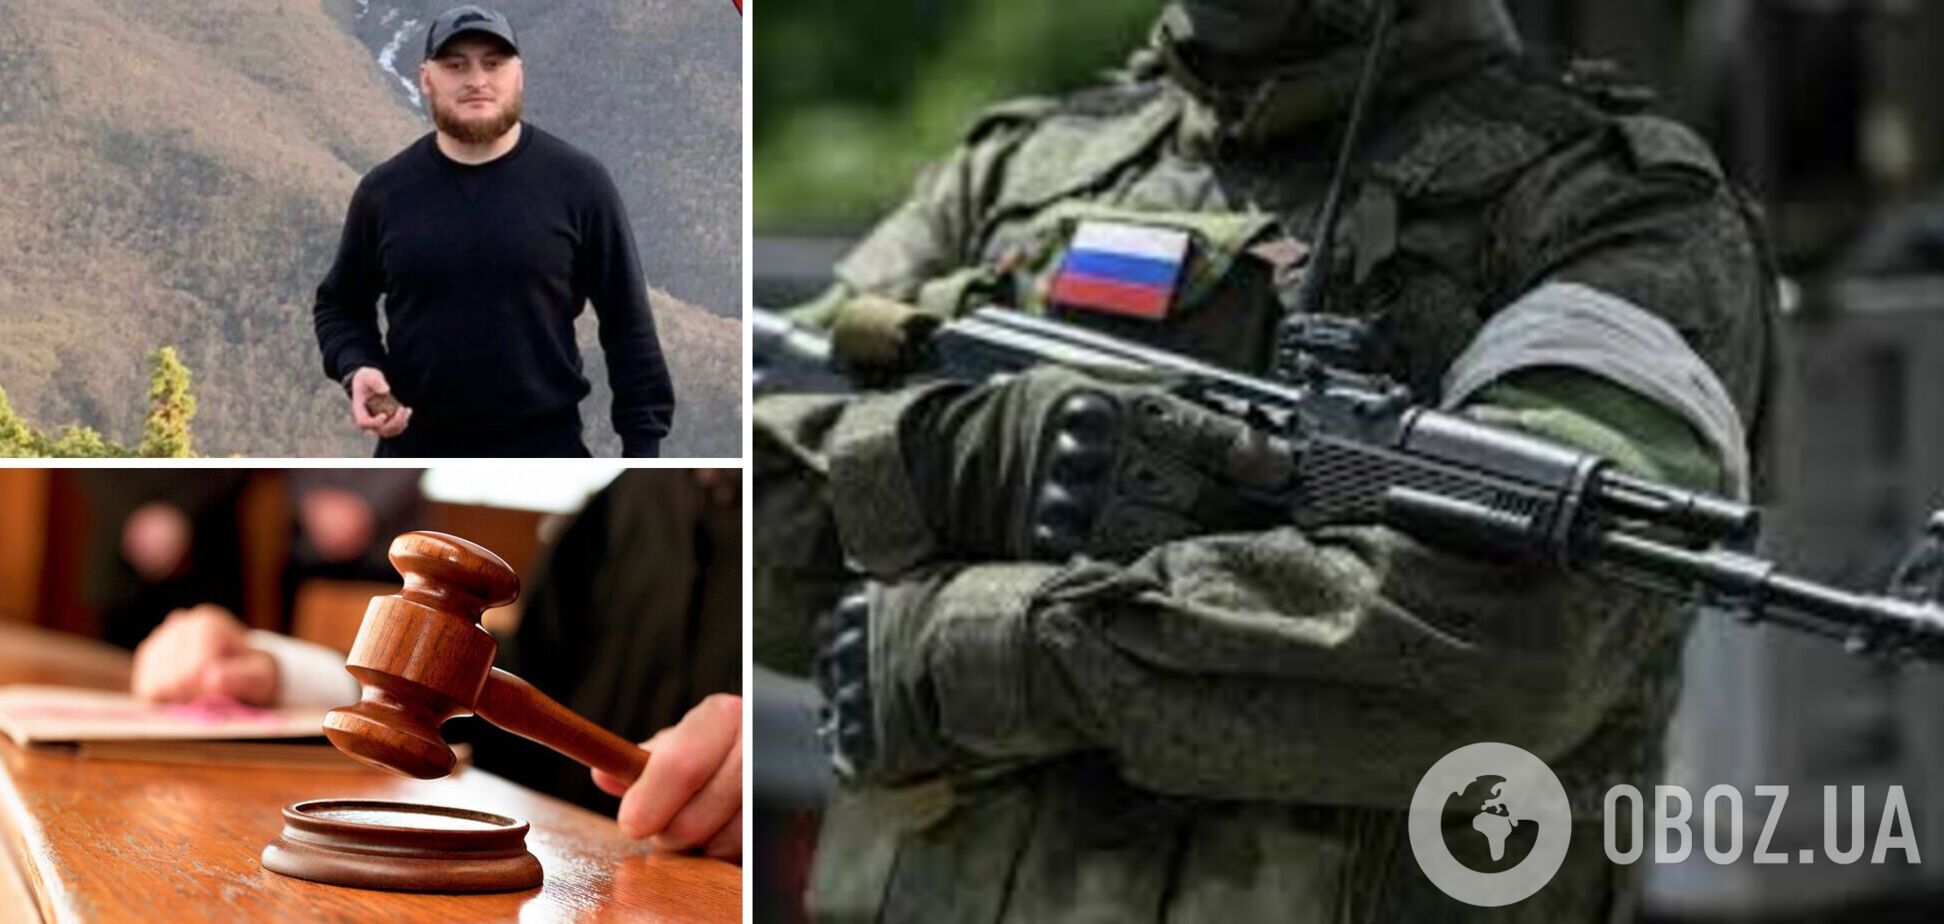 'Ветеранам' можно убивать, калечить и воровать: как российские суды прощают любые преступления участникам войны против Украины